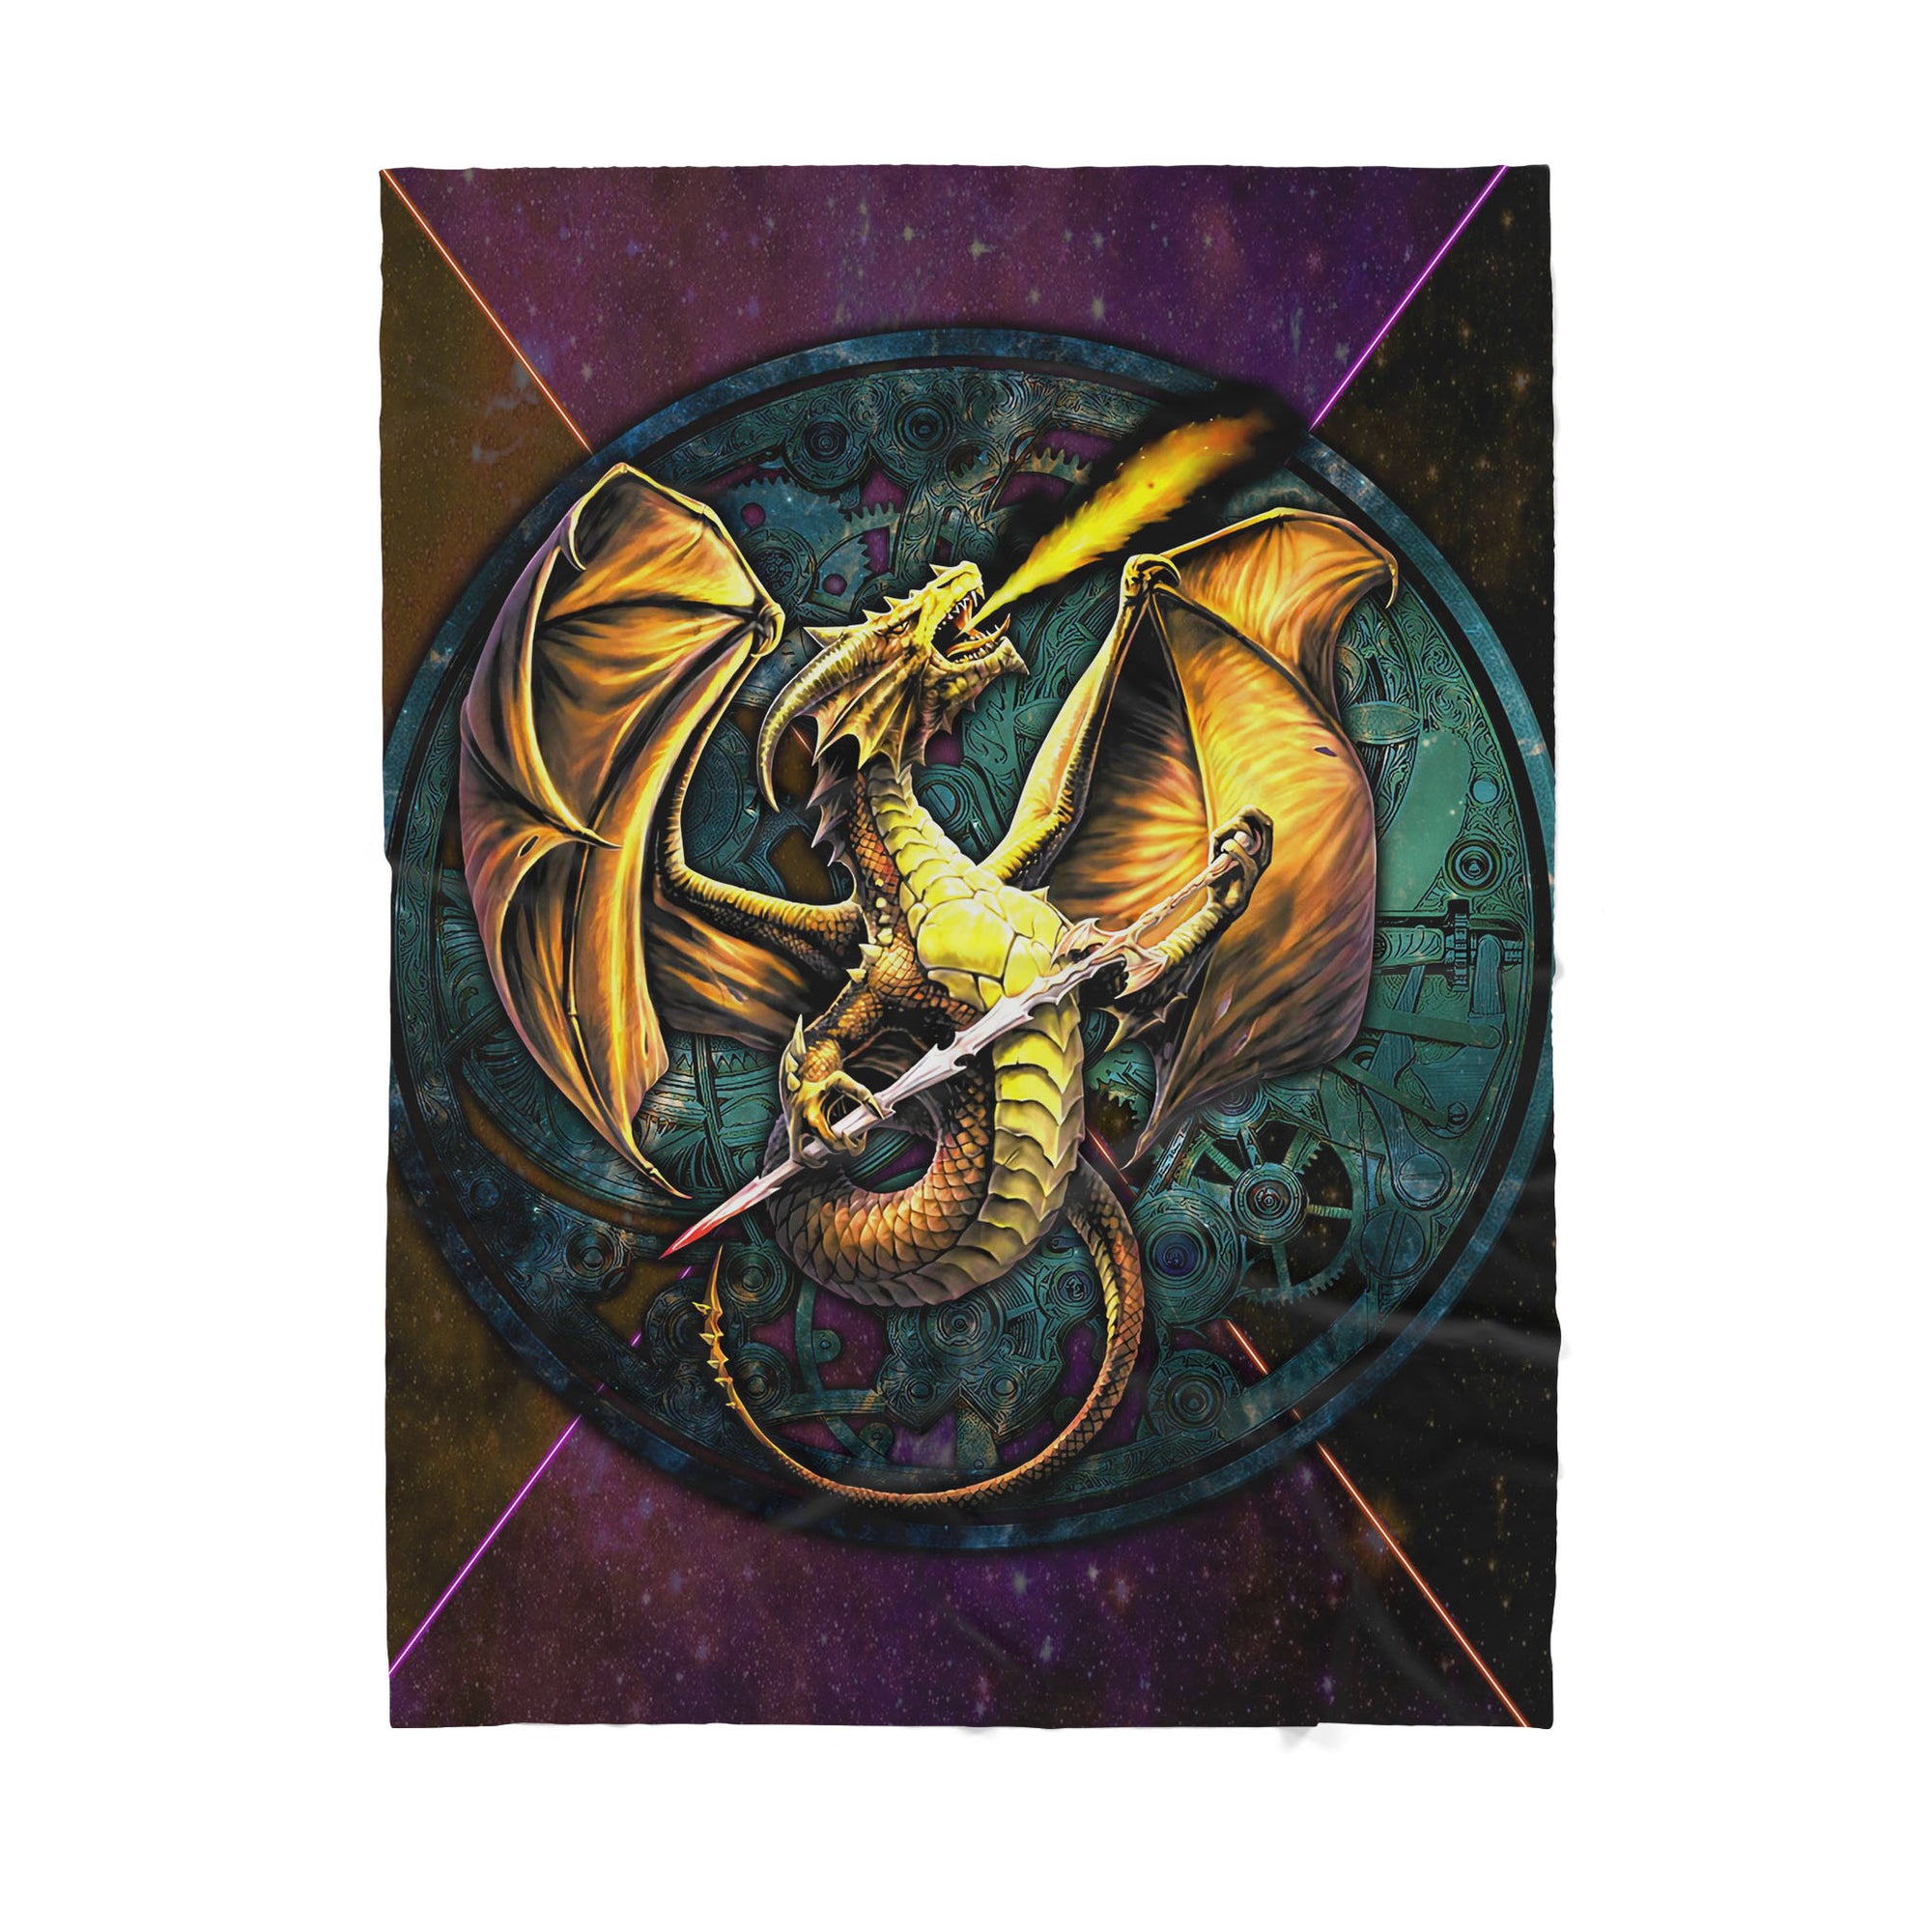 Custom Blanket Dragon - Gift For My Family - Sherpa Blanket HG